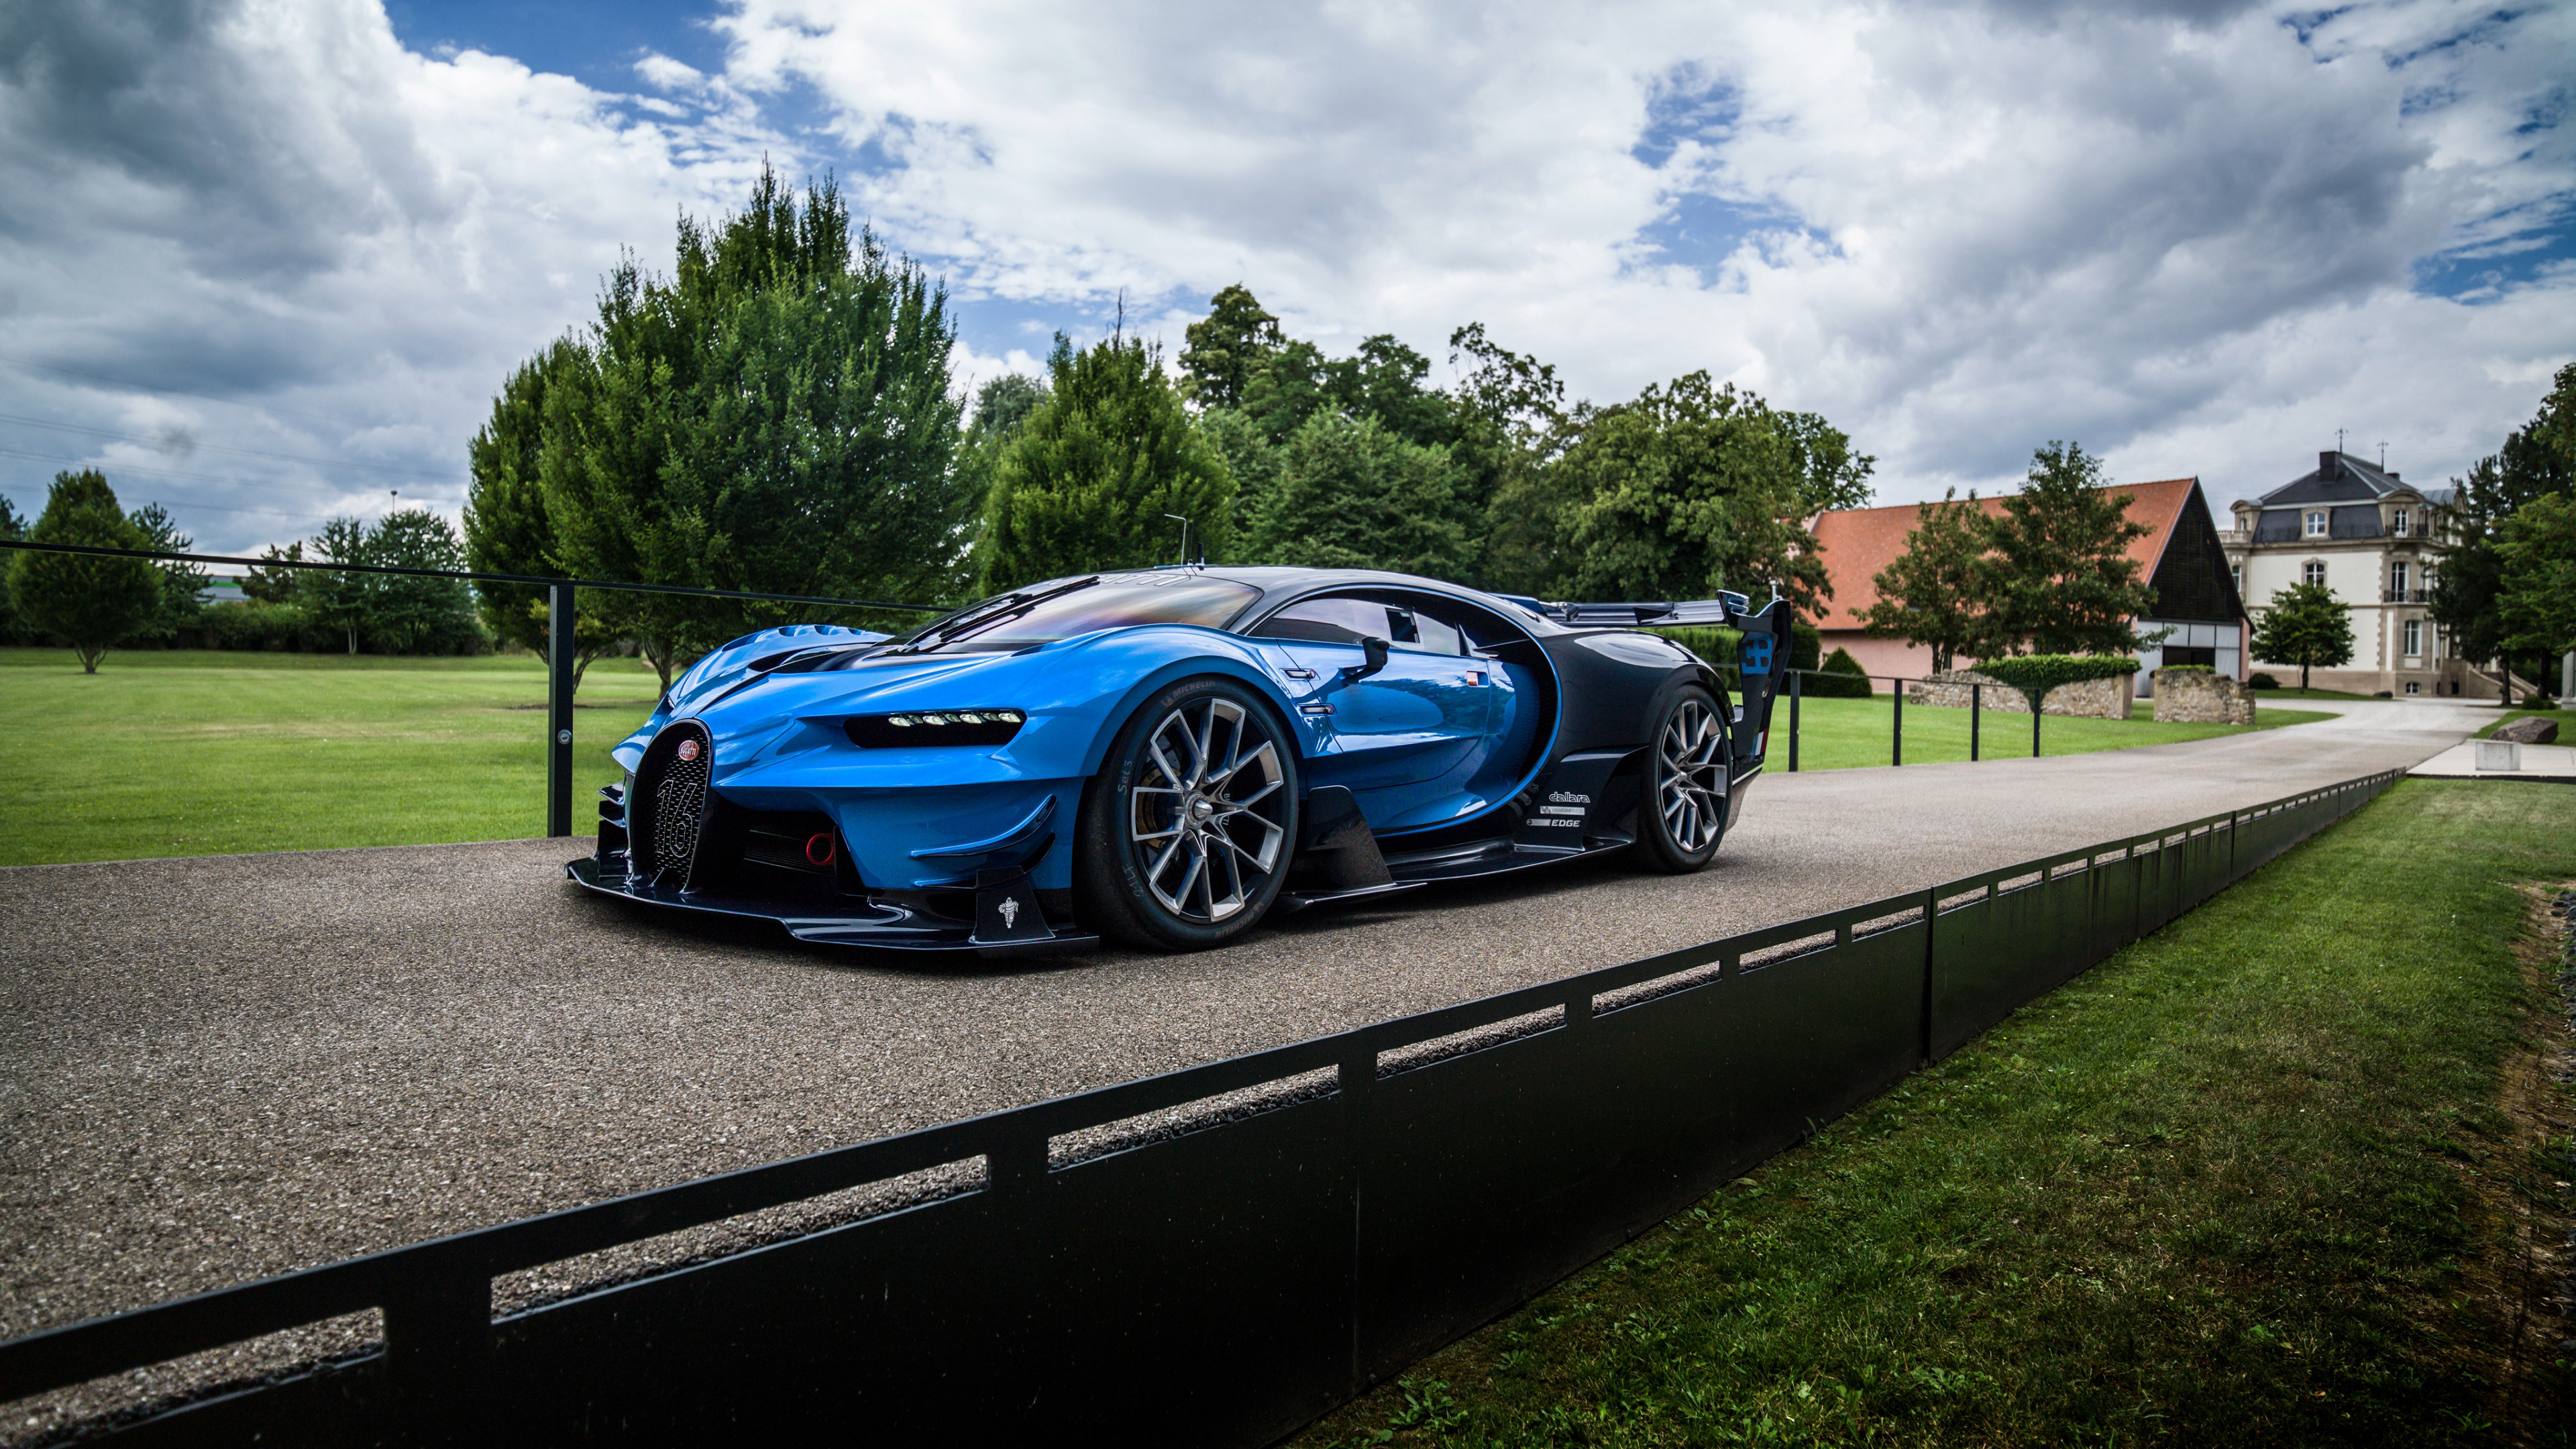 2016 bugatti vision gran turismo 1539104767 - 2016 Bugatti Vision Gran Turismo - cars wallpapers, bugatti wallpapers, bugatti vision gran turismo wallpapers, 4k-wallpapers, 2016 cars wallpapers